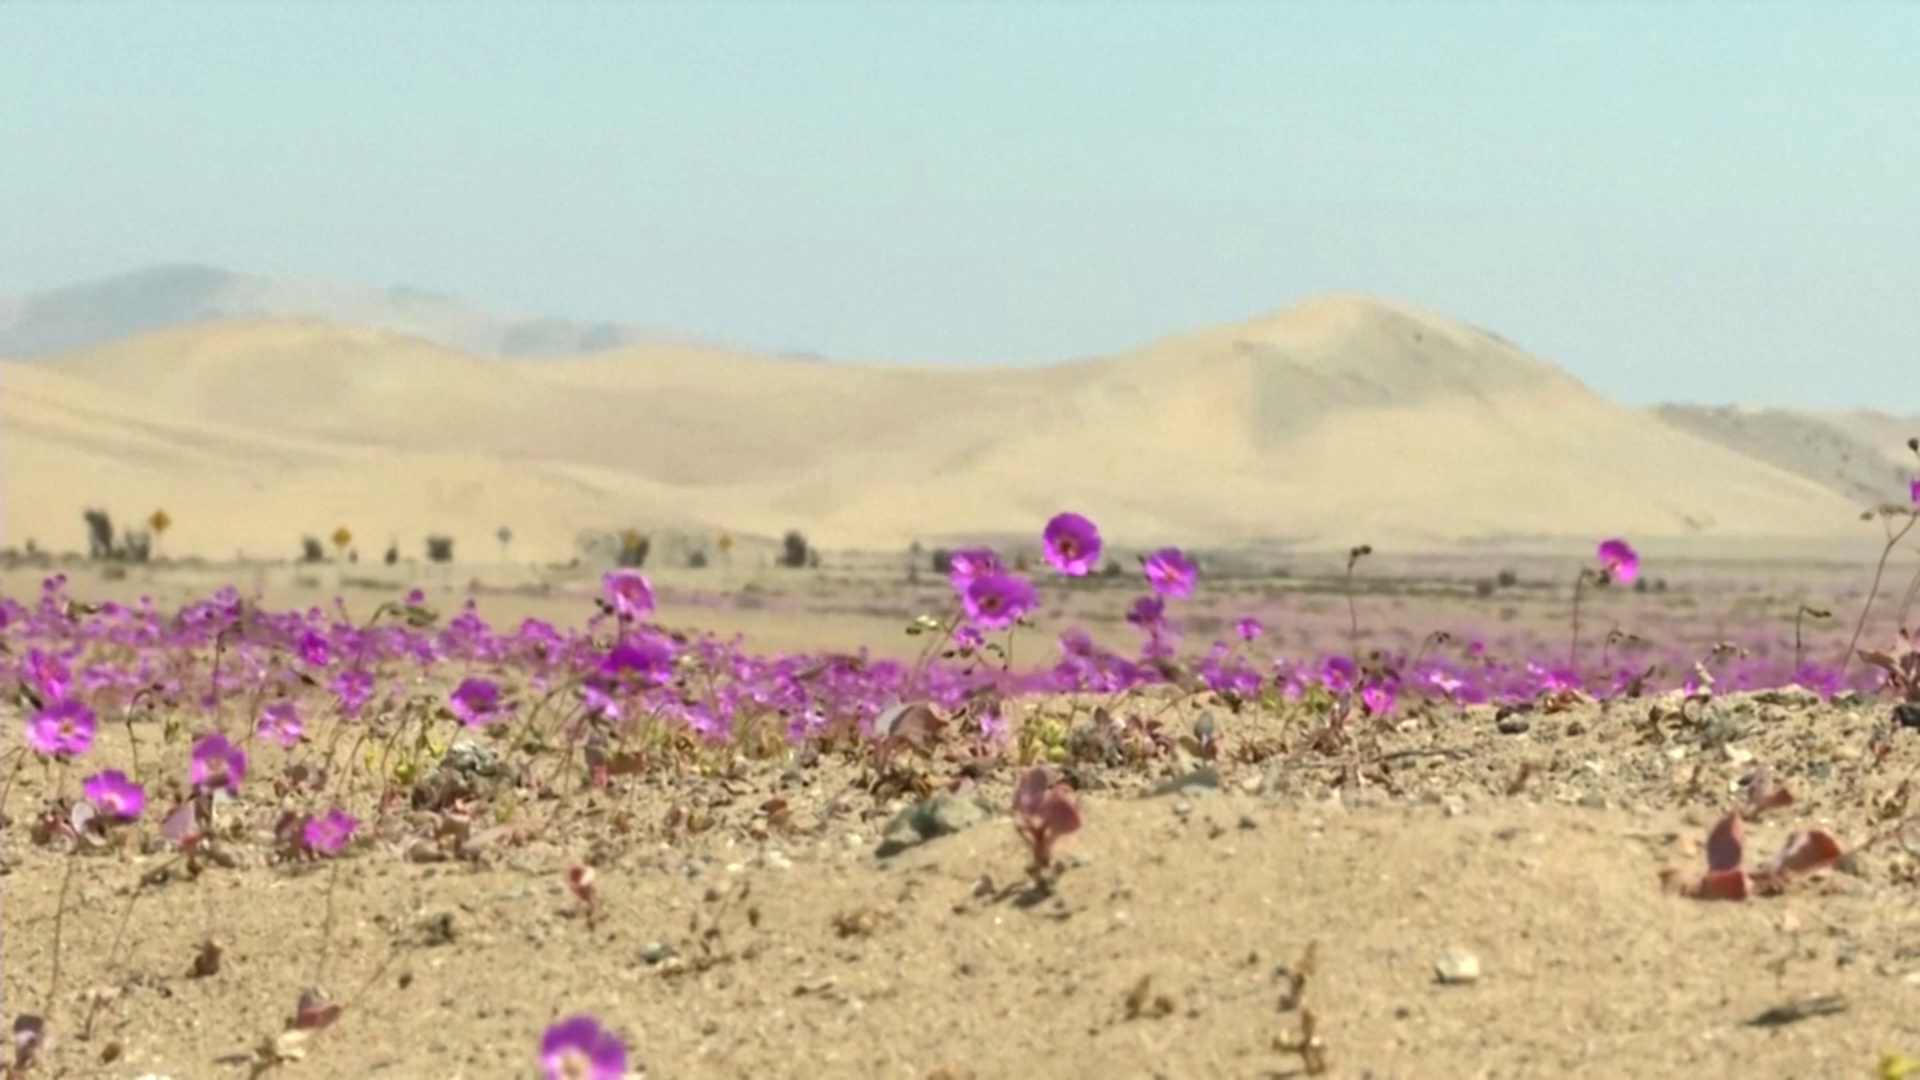 Ковёр из цветов украсил пустыню в Чили, несмотря на засуху